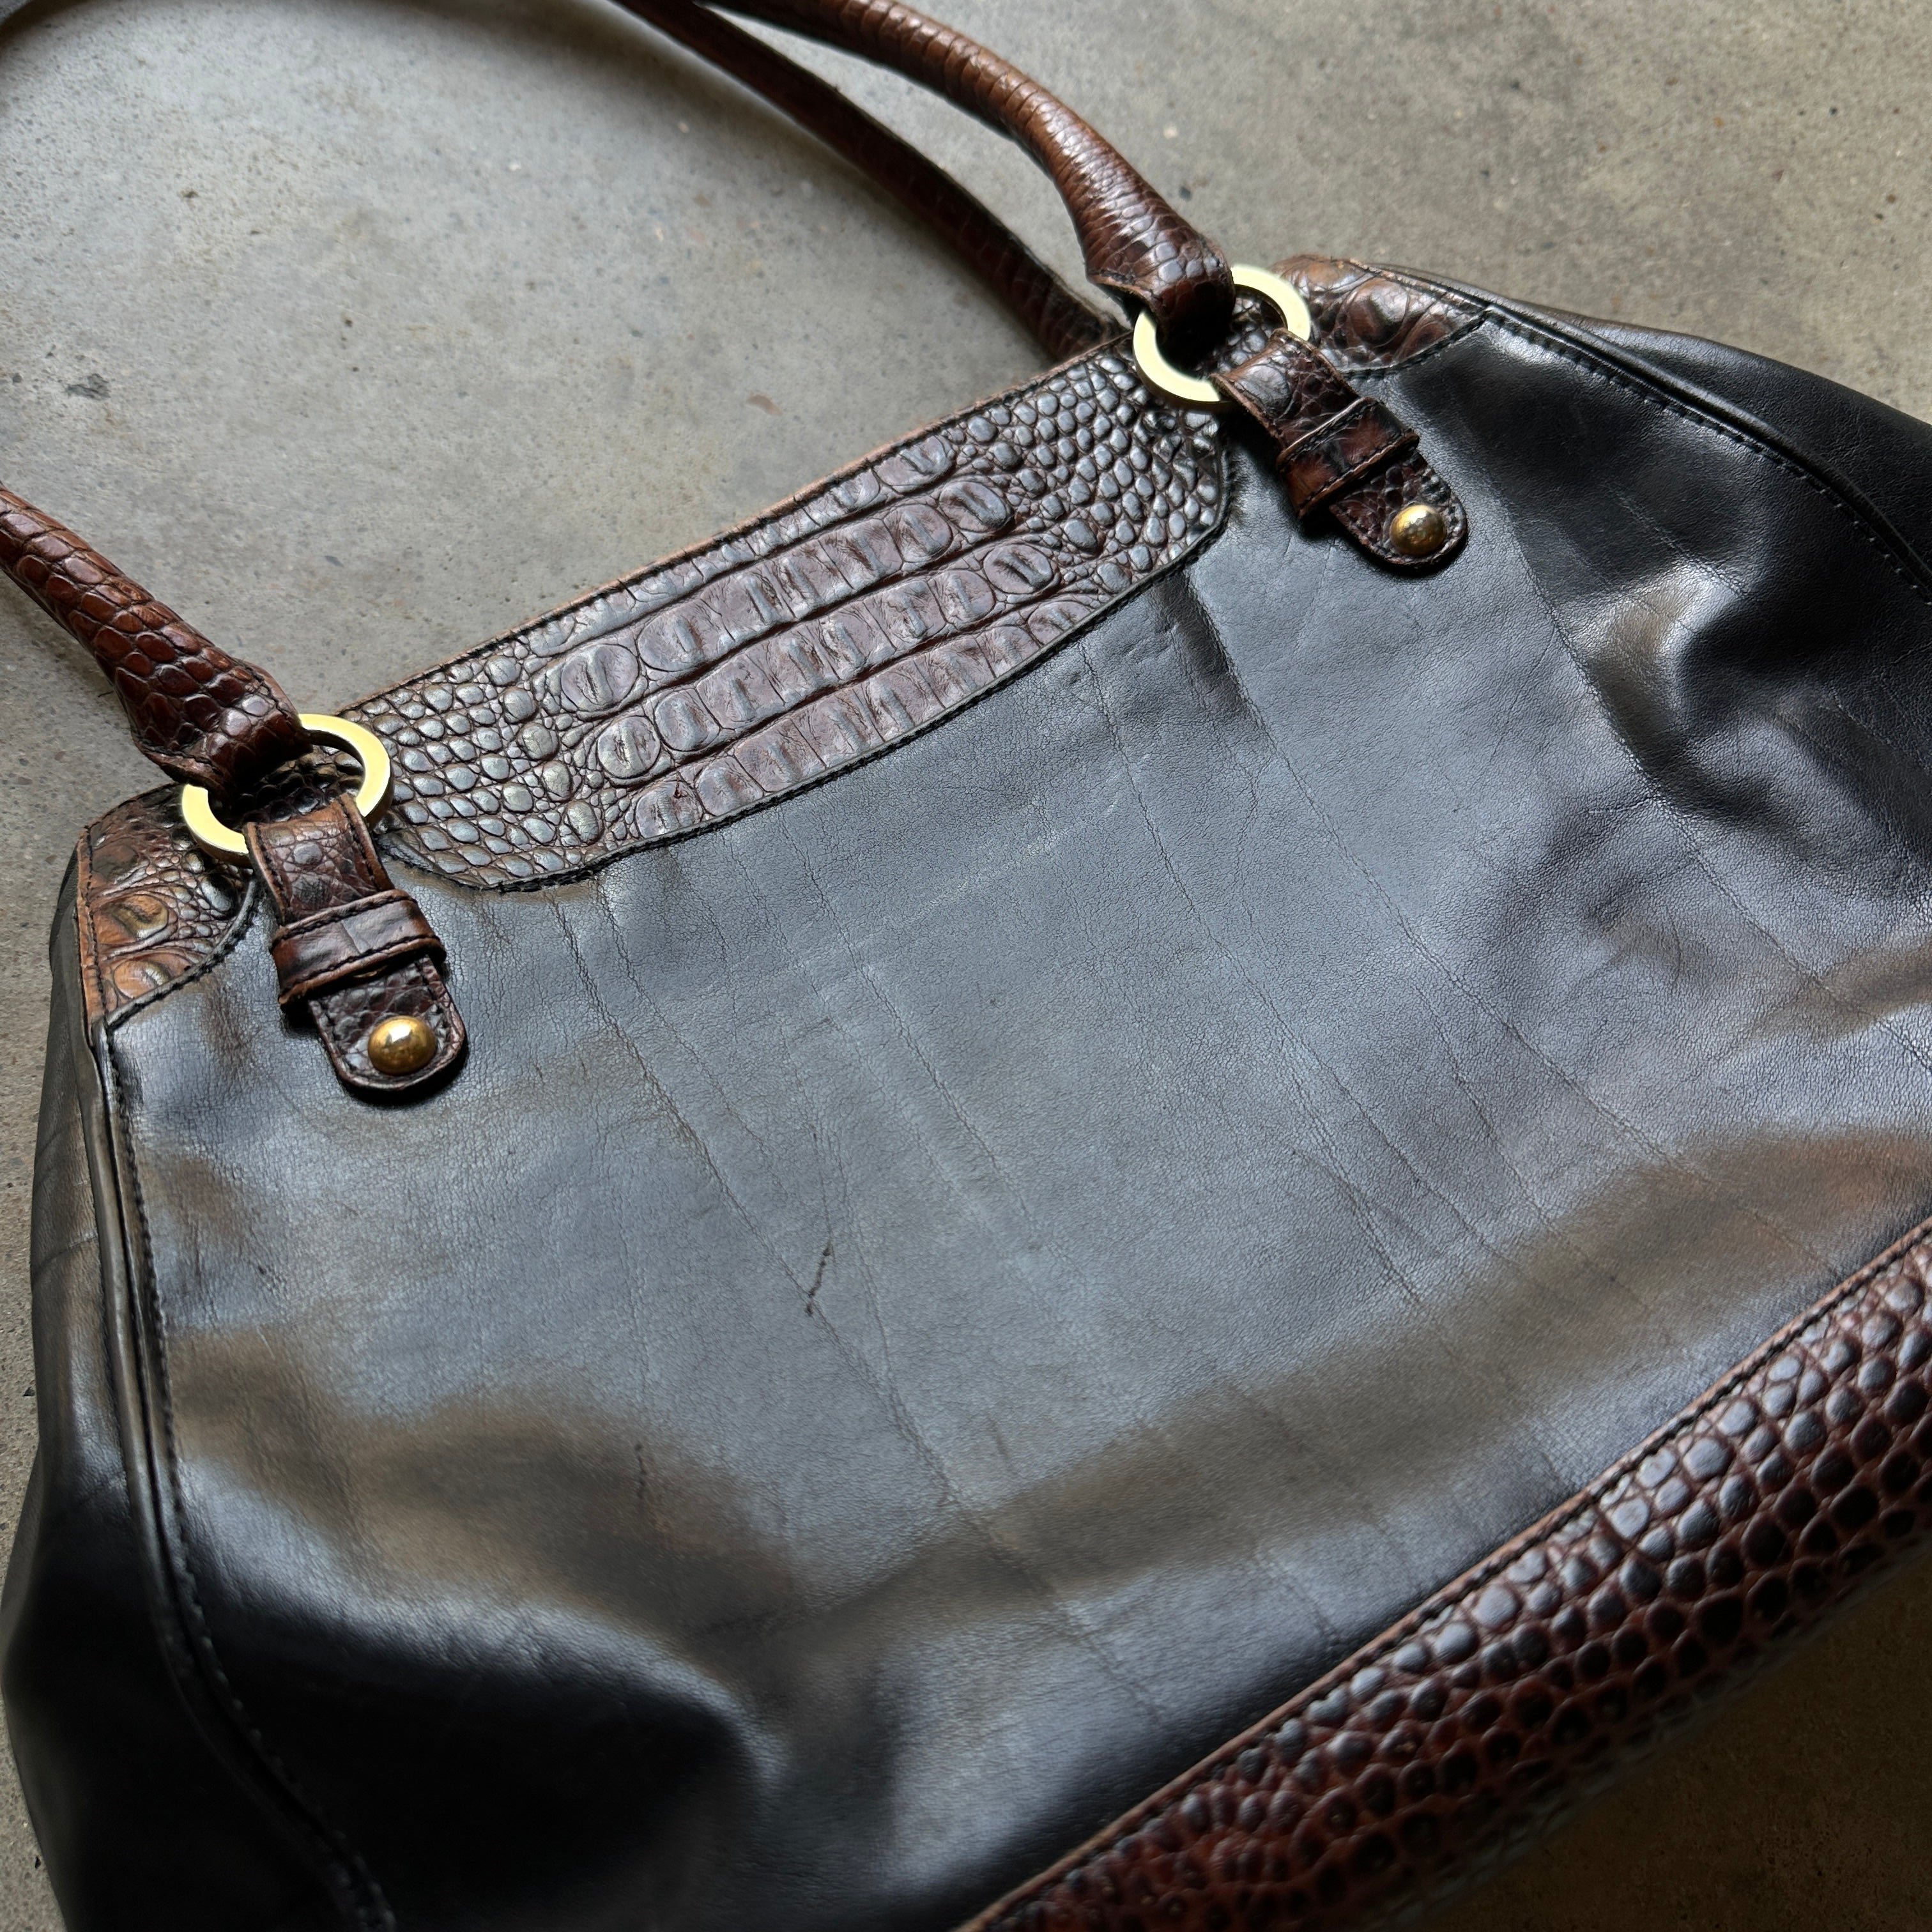 “Brahmin” Black/Brown Croc & Leather Tote Bag